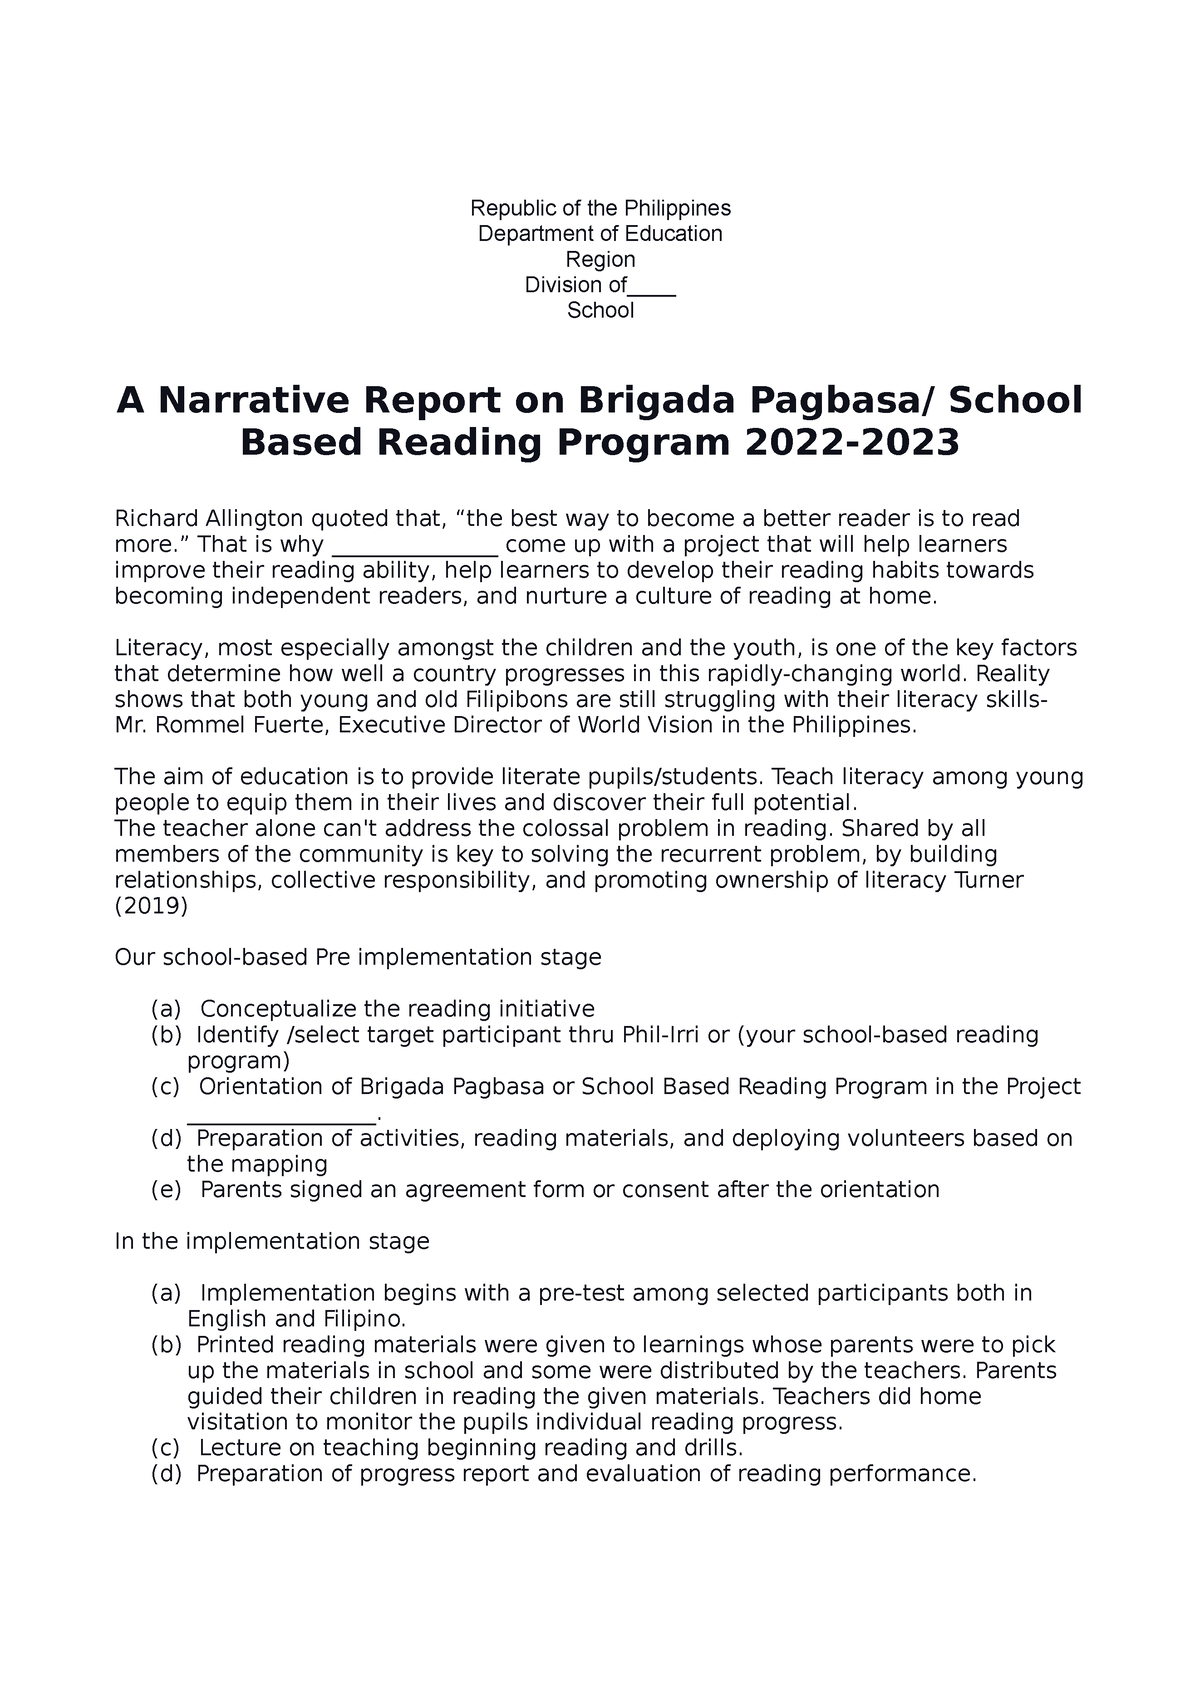 Narrative On Brigada Eskwela Report 2022 2023 Republic Of The